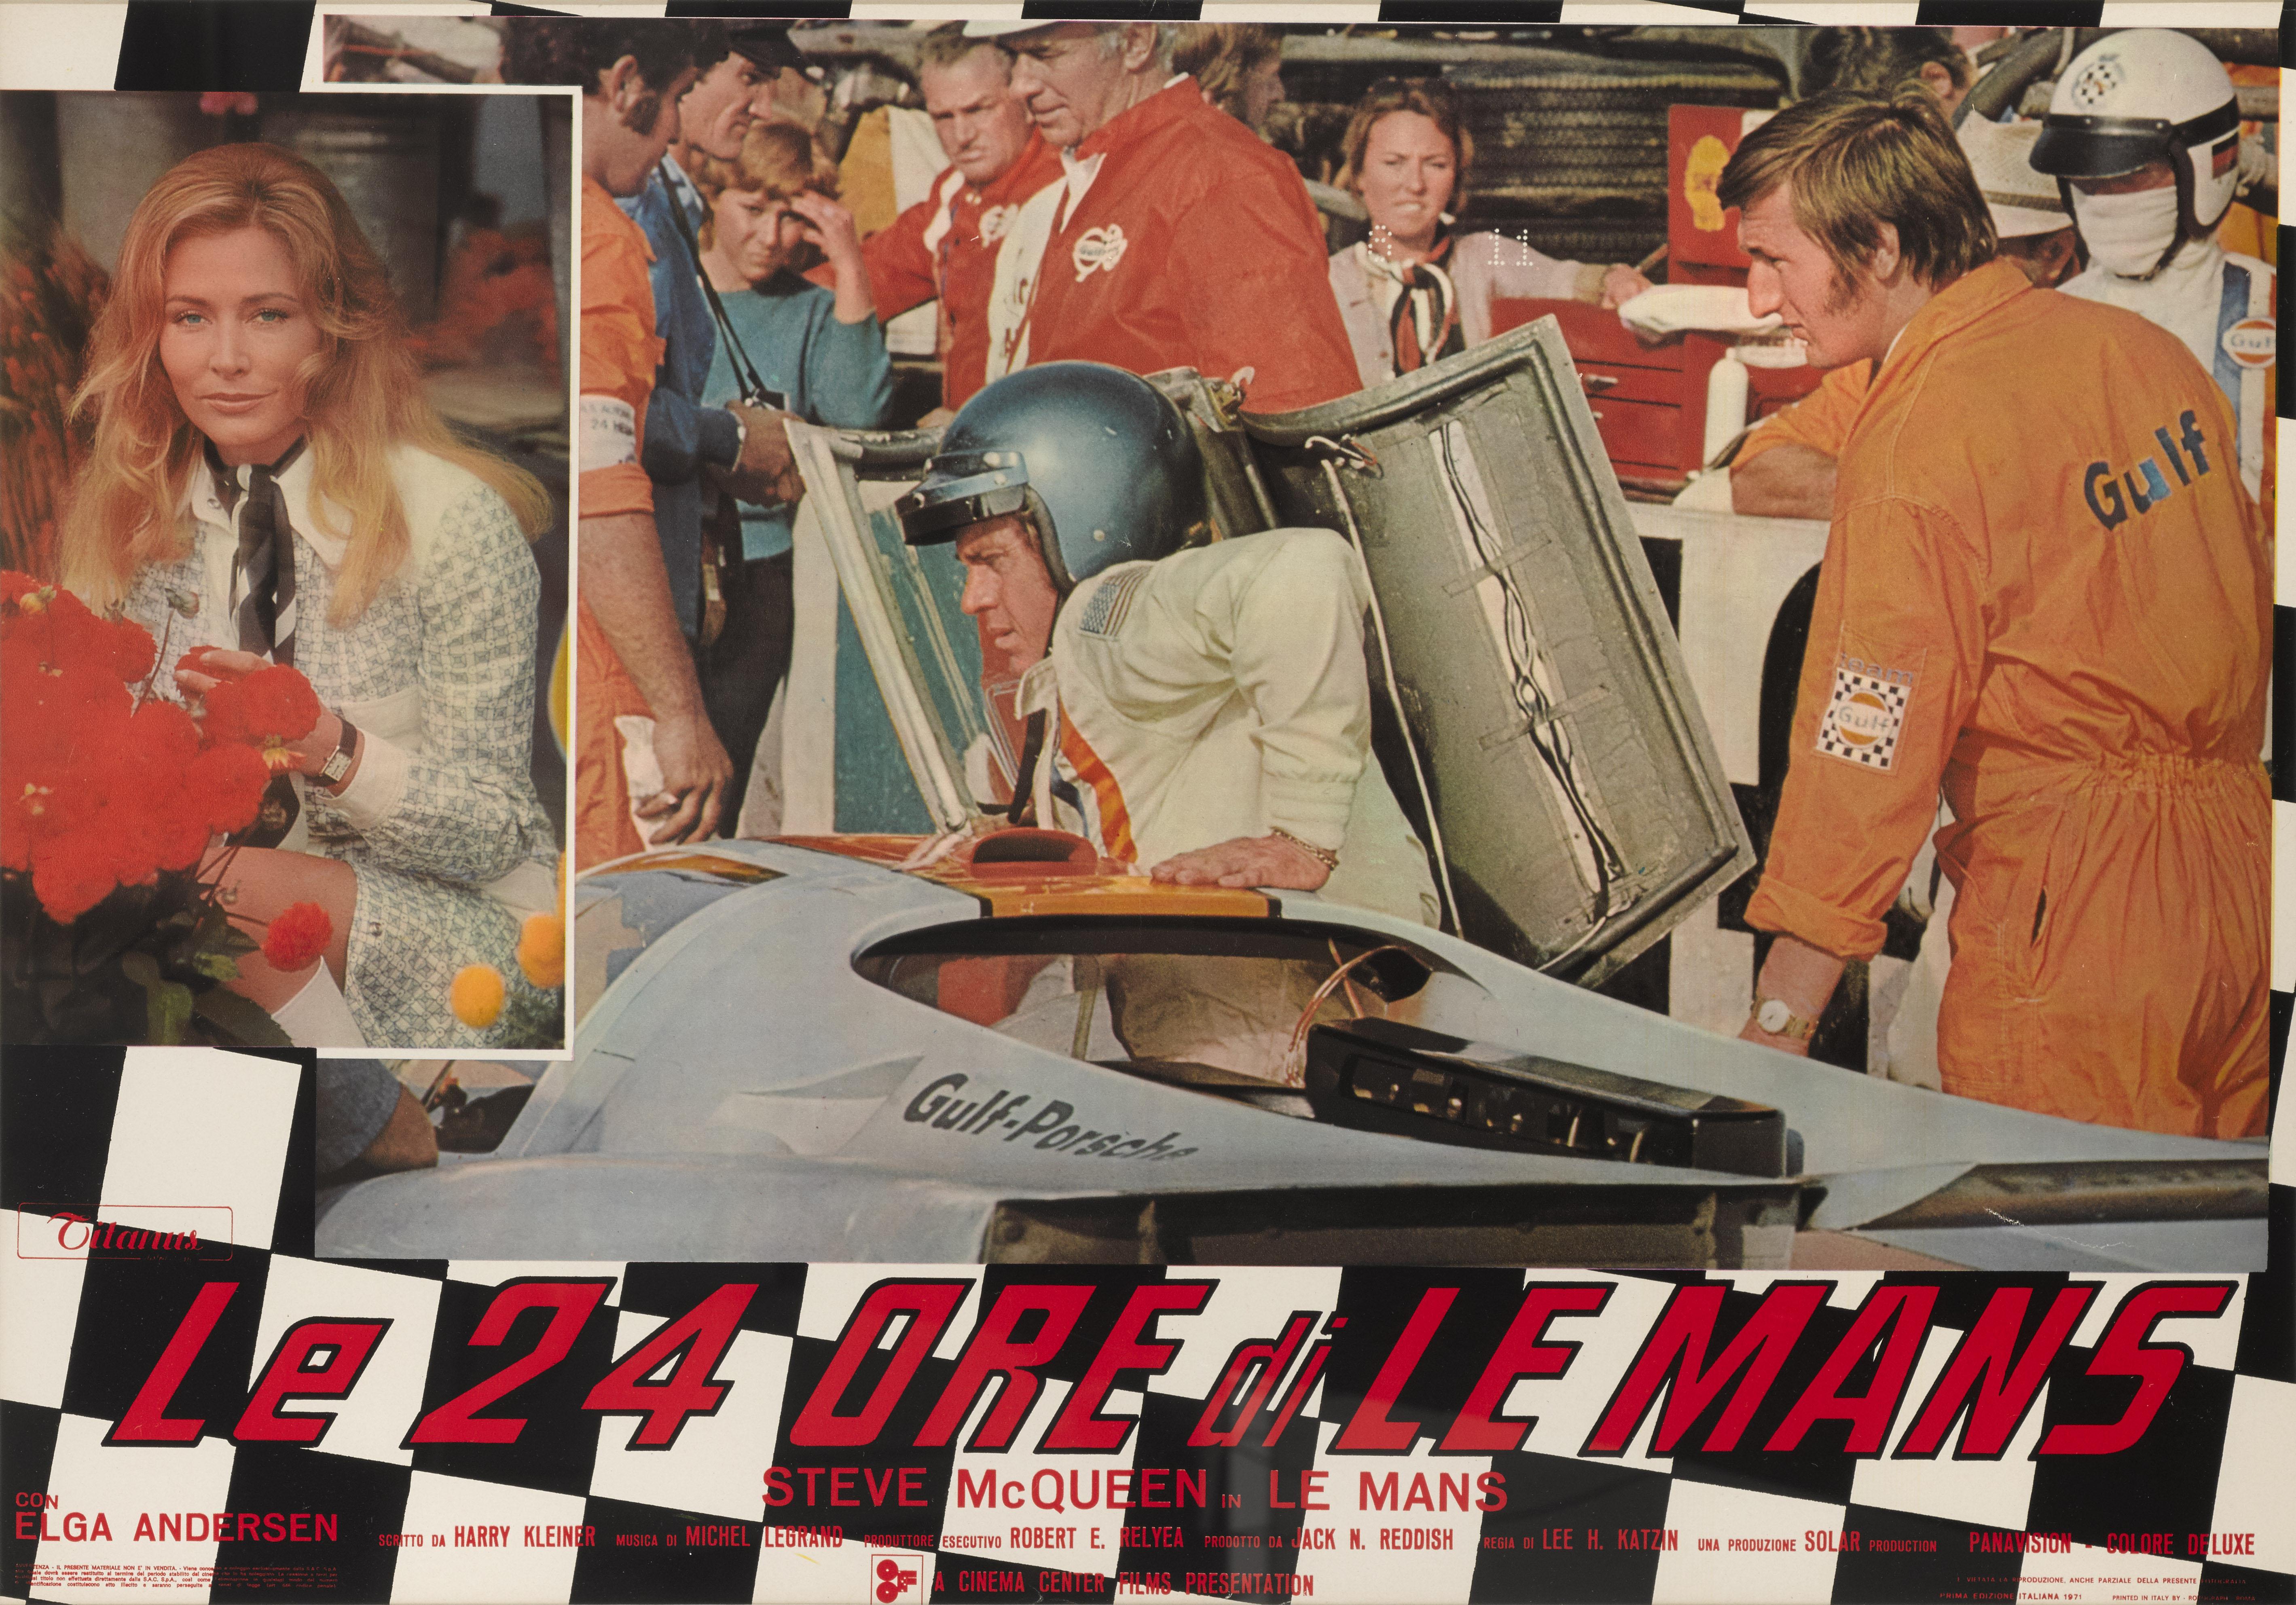 Affiche italienne originale du film Le Mans (1971) de Steve McQueen. Ce film, réalisé par Lee H. Katzin, dépeint la célèbre course automobile d'endurance des 24 heures du Mans, et met en vedette Steve McQueen. Il a été tourné sur le circuit du Mans